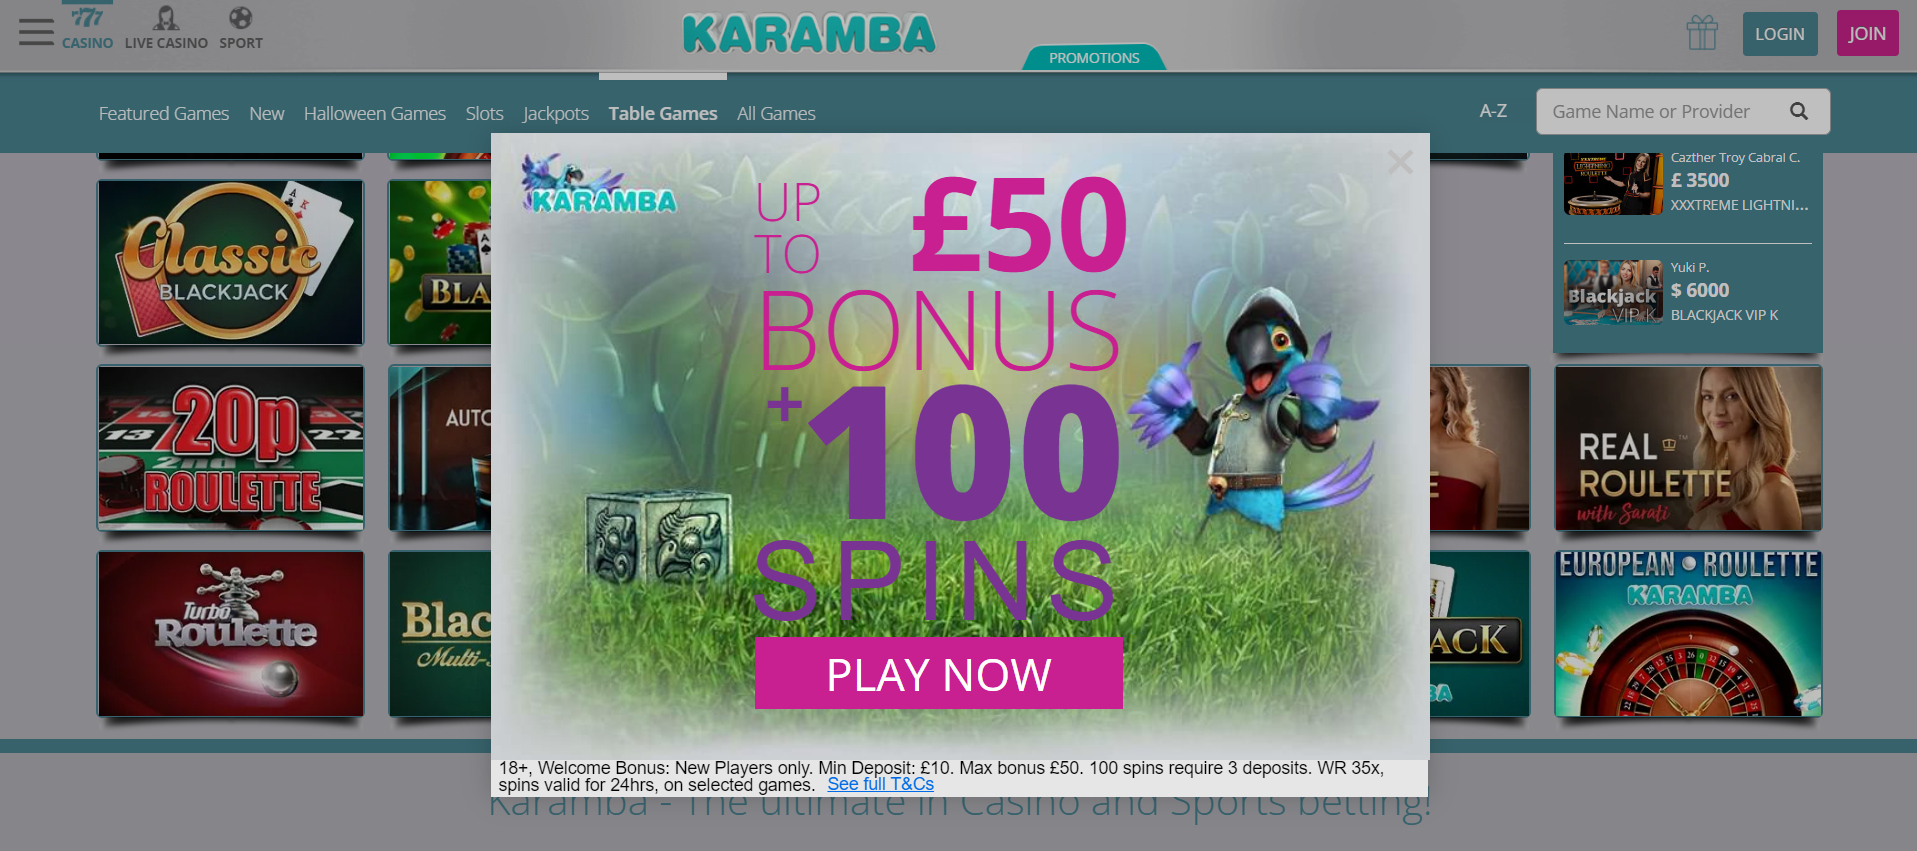 Play Online Casino at Karamba